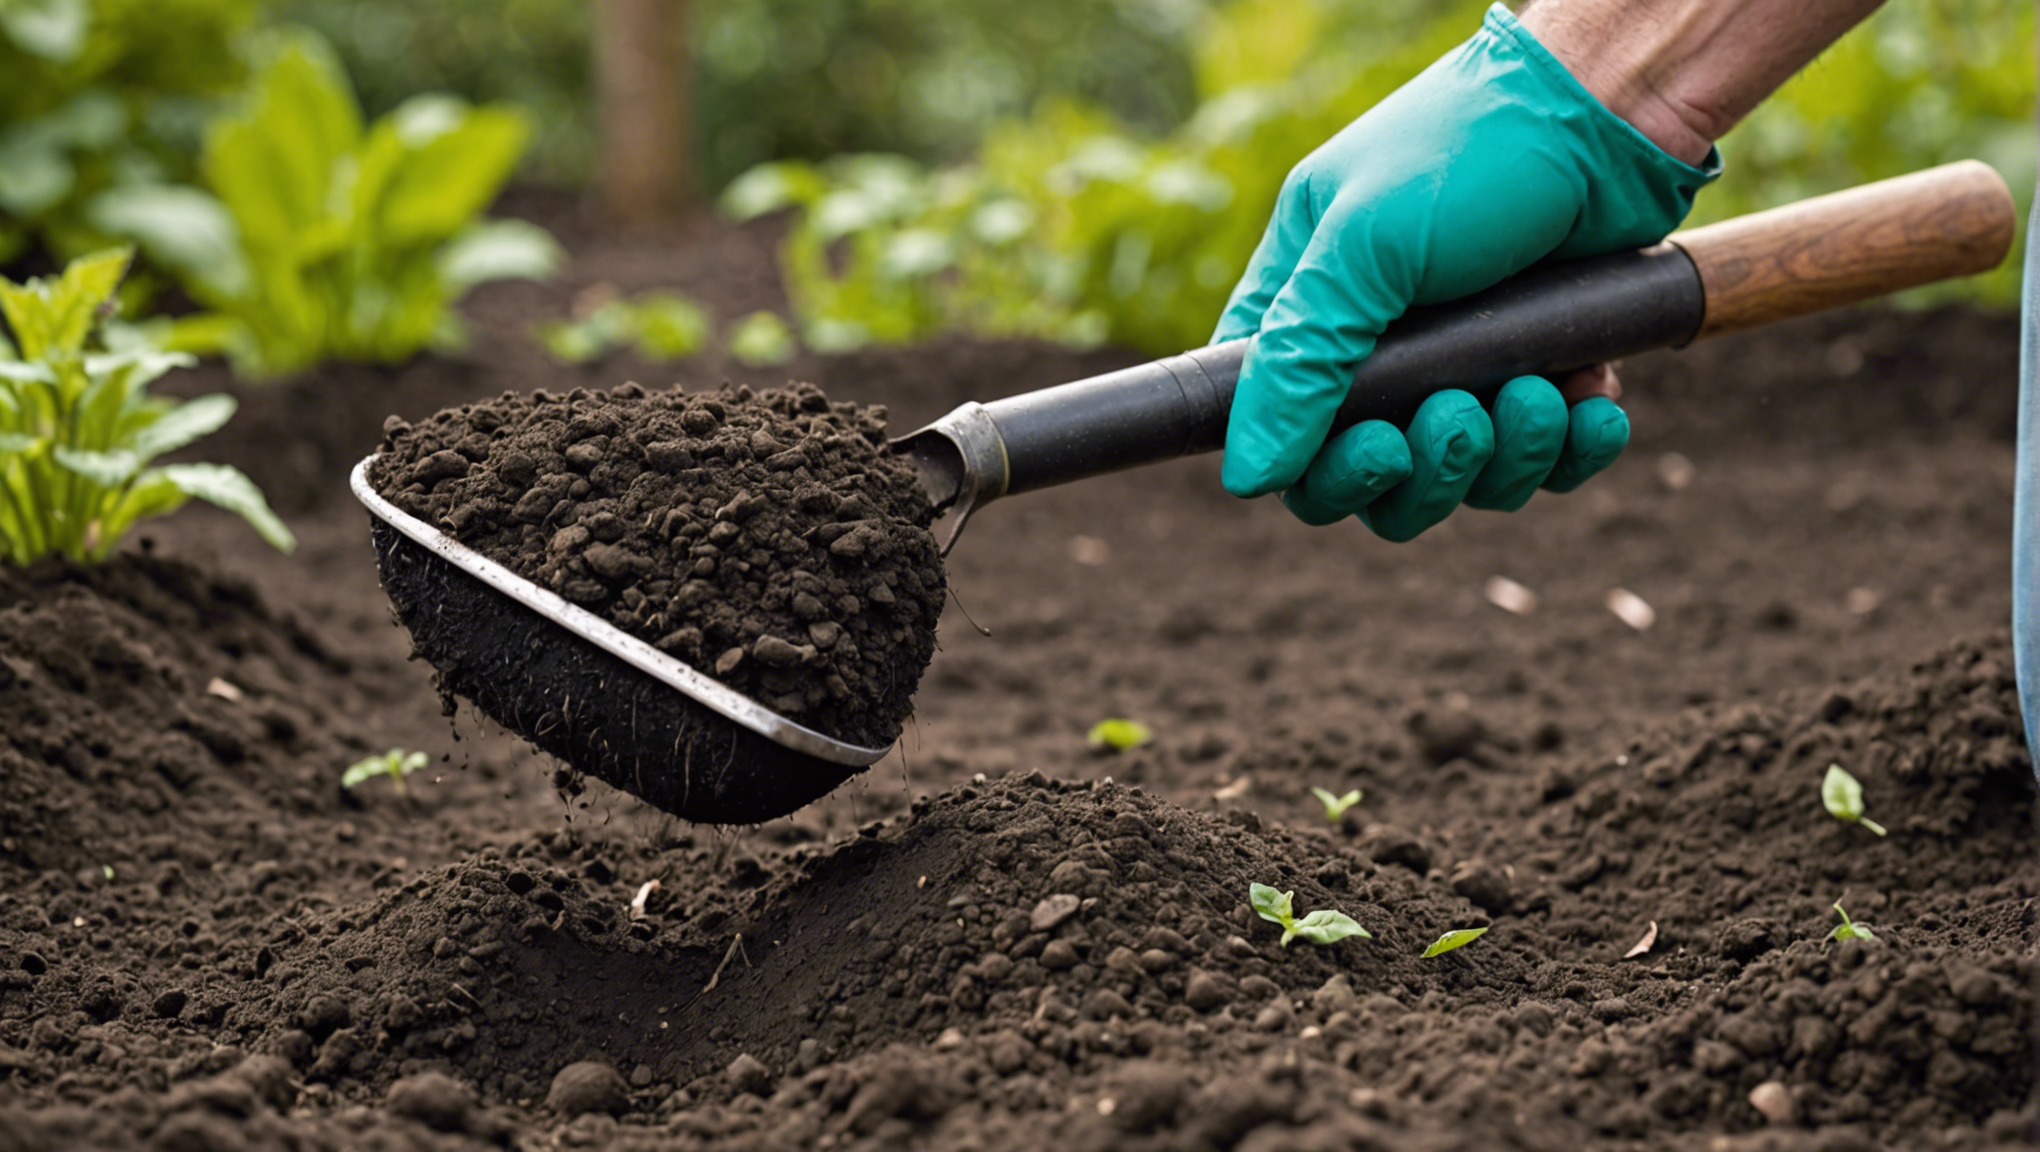 découvrez comment niveler le sol de votre jardin de manière efficace et facile avec nos conseils pratiques.